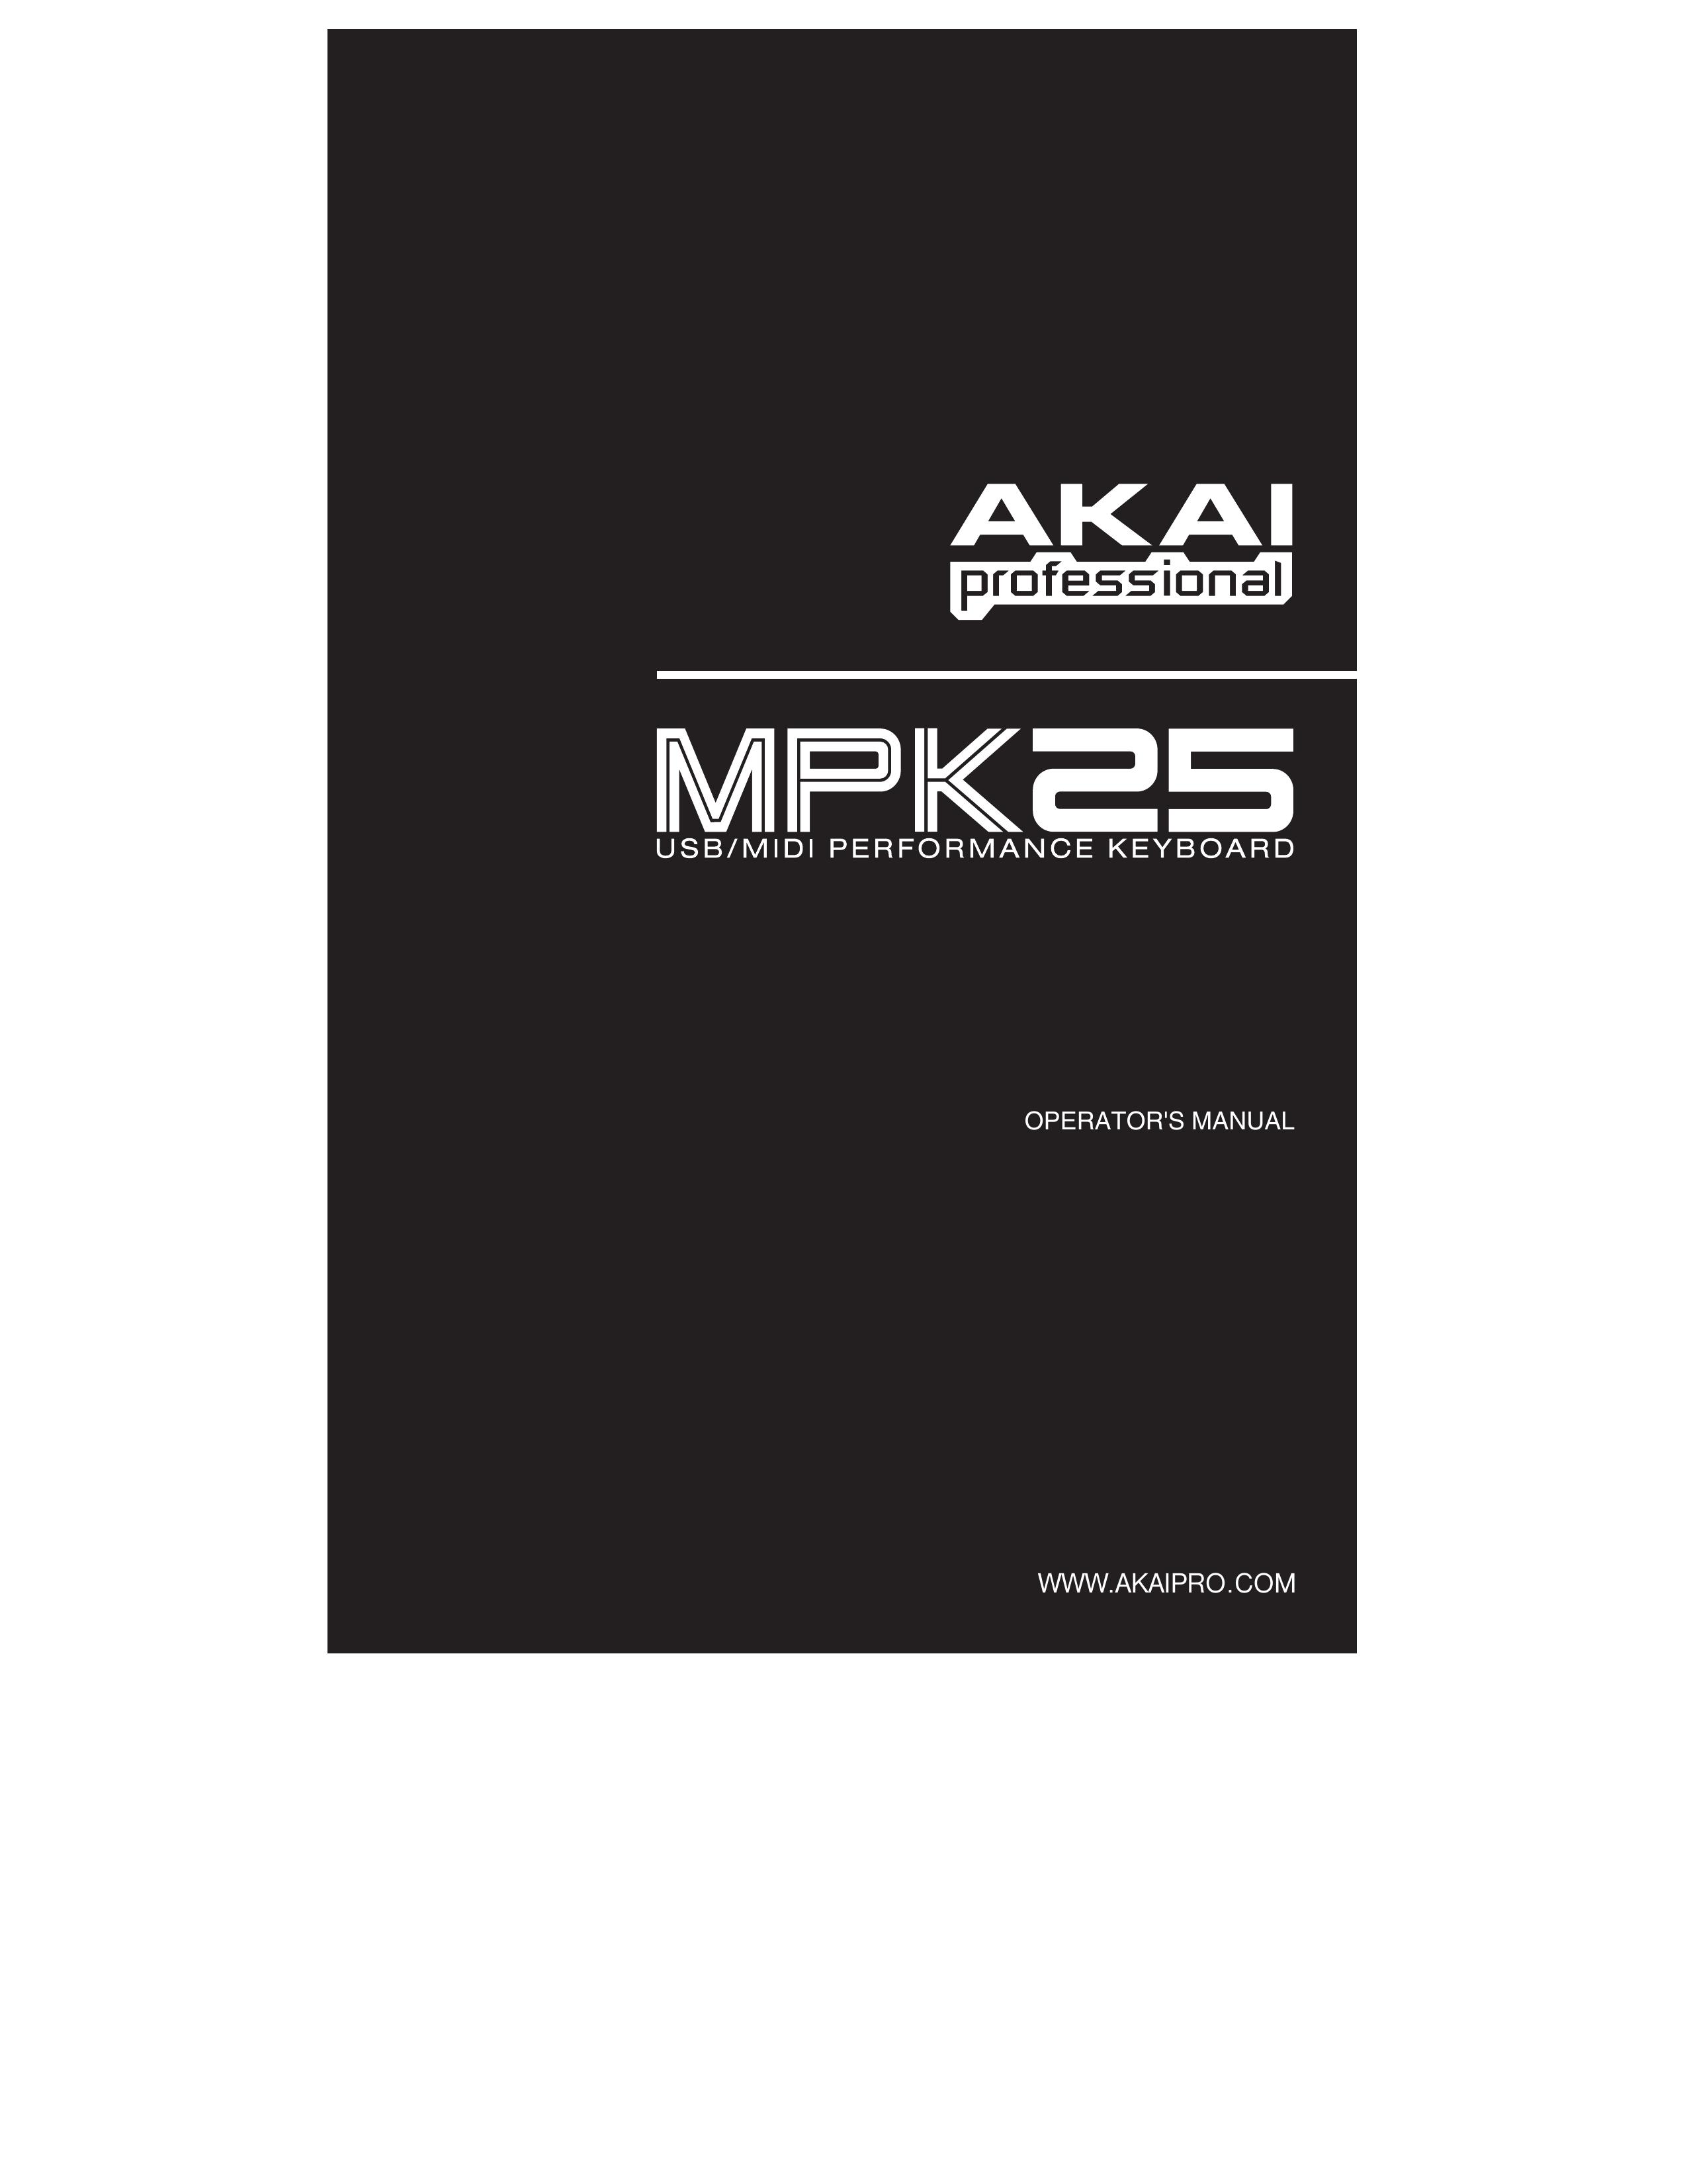 Akai MPK25 Electronic Keyboard User Manual